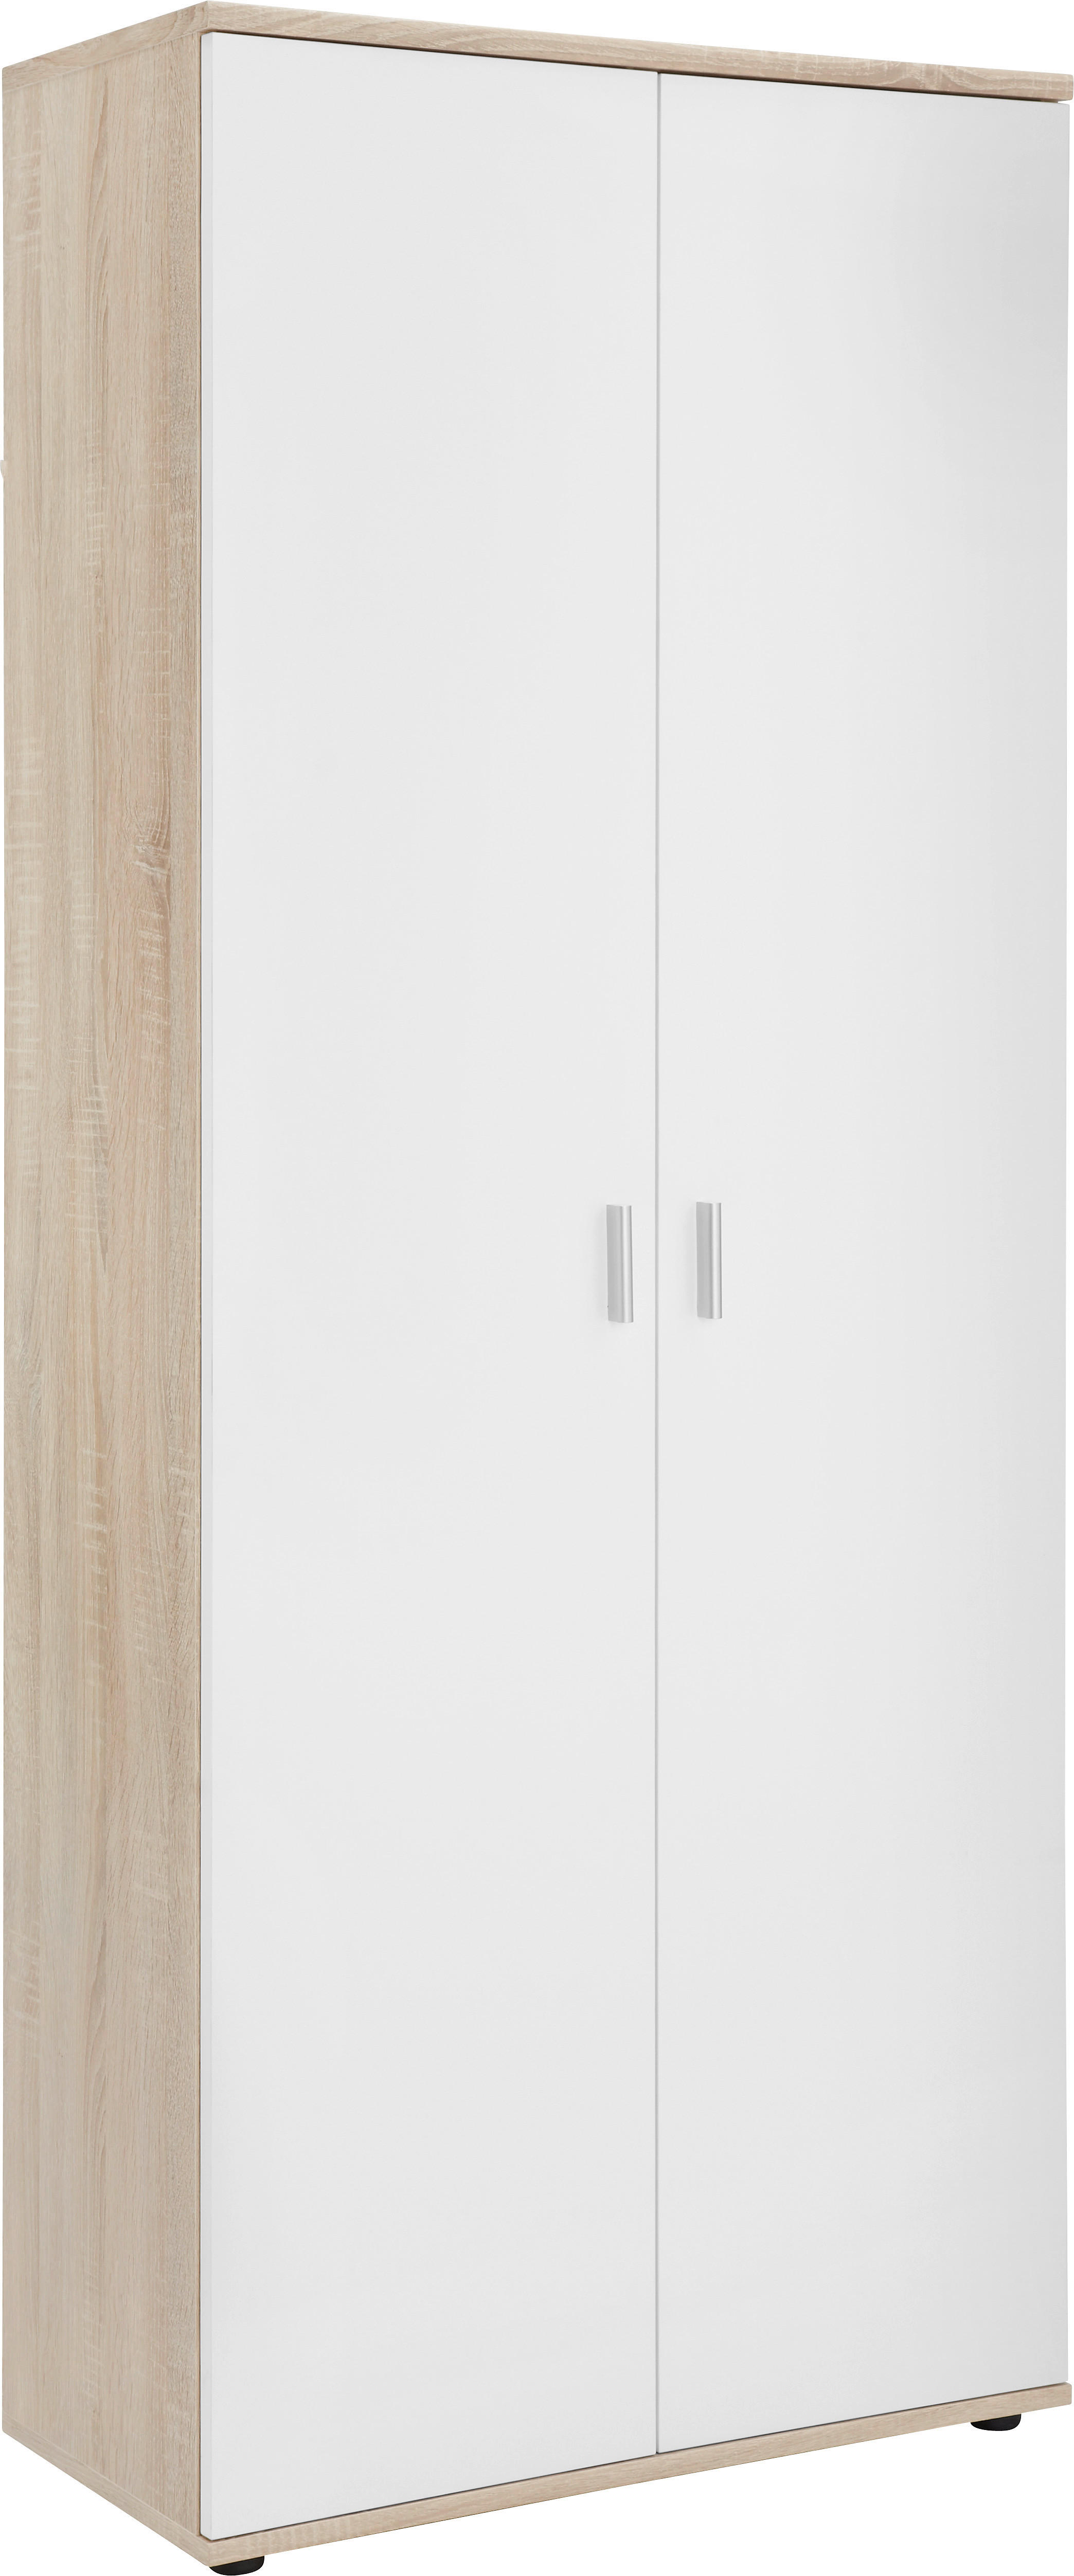 Xora BOTNÍK, bílá, barvy dubu, 69/176/35 cm - bílá,barvy dubu - kompozitní dřevo